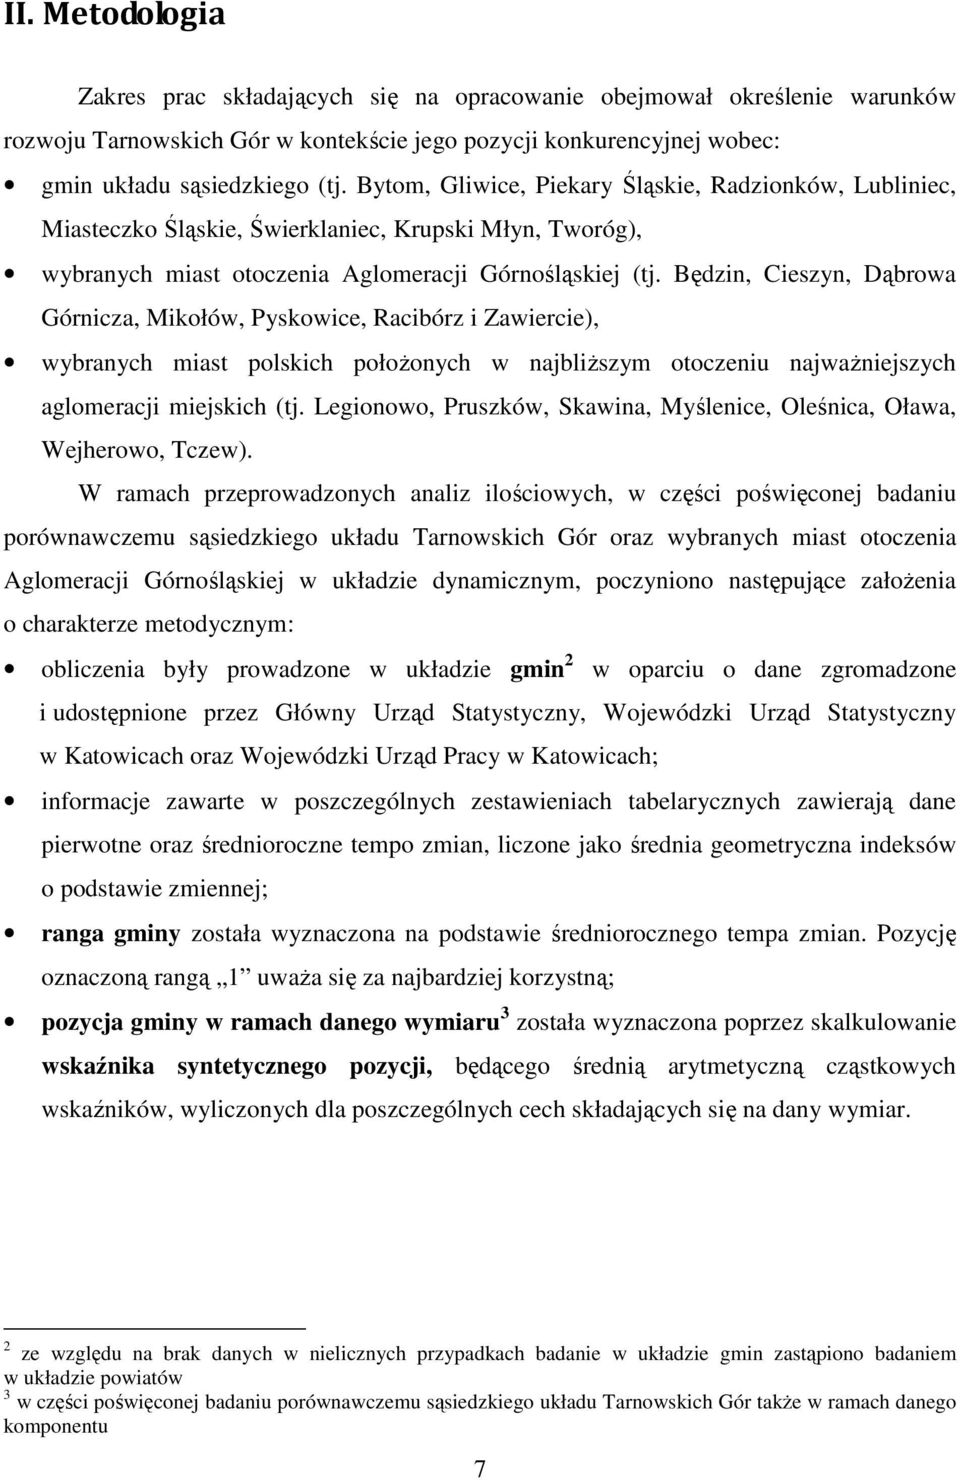 Będzin, Cieszyn, Dąbrowa Górnicza, Mikołów, Pyskowice, Racibórz i Zawiercie), wybranych miast polskich połoŝonych w najbliŝszym otoczeniu najwaŝniejszych aglomeracji miejskich (tj.